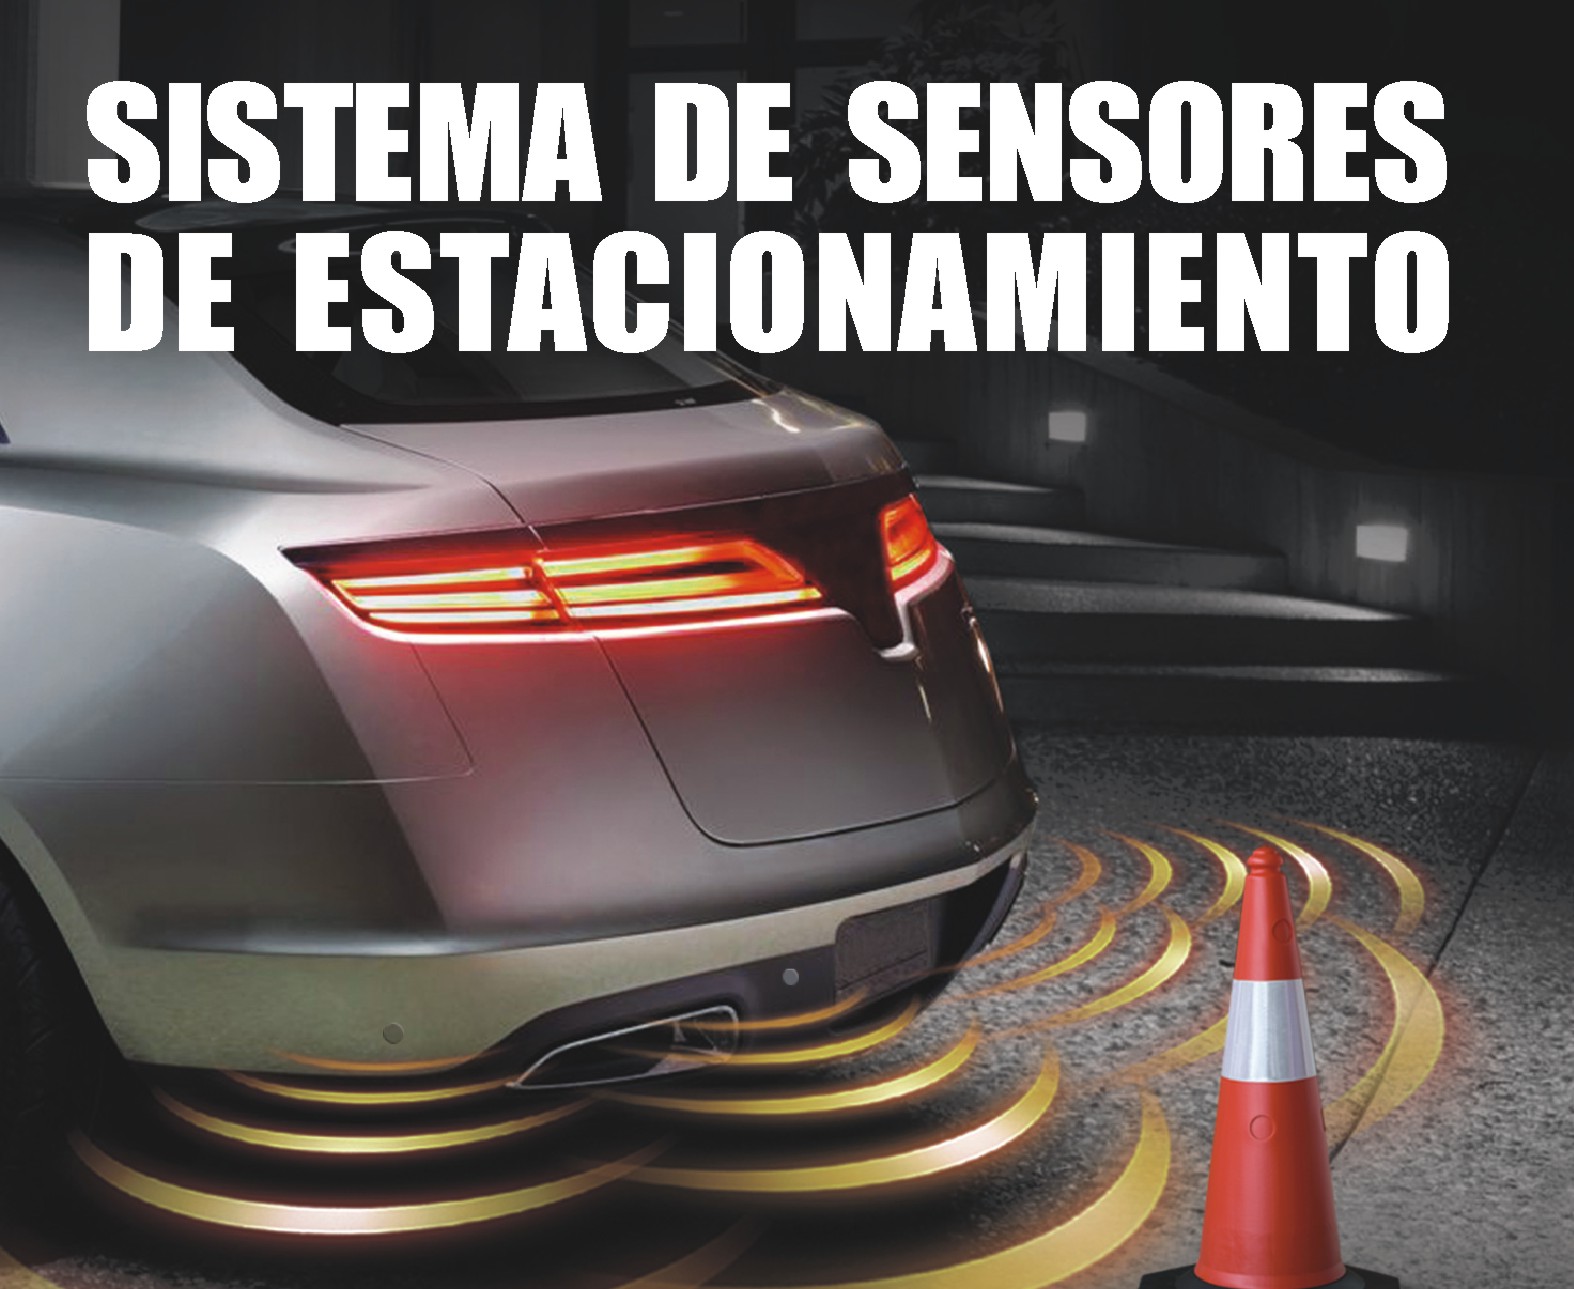 Sistema de sensores de estacionamiento